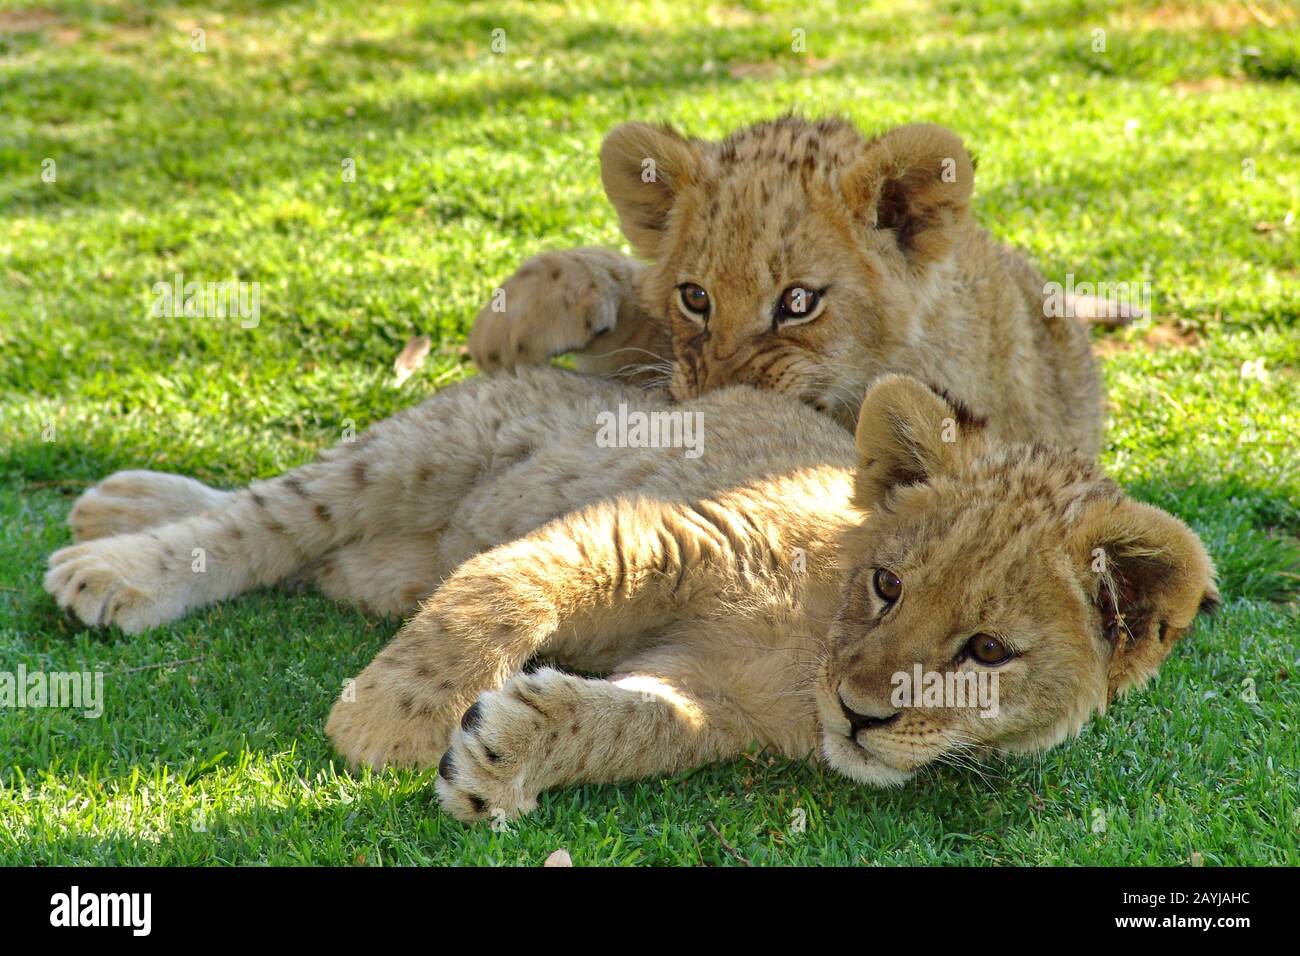 Leone (panthera leo), due cuccioli di leone che si trovano insieme in un prato, Sud Africa Foto Stock